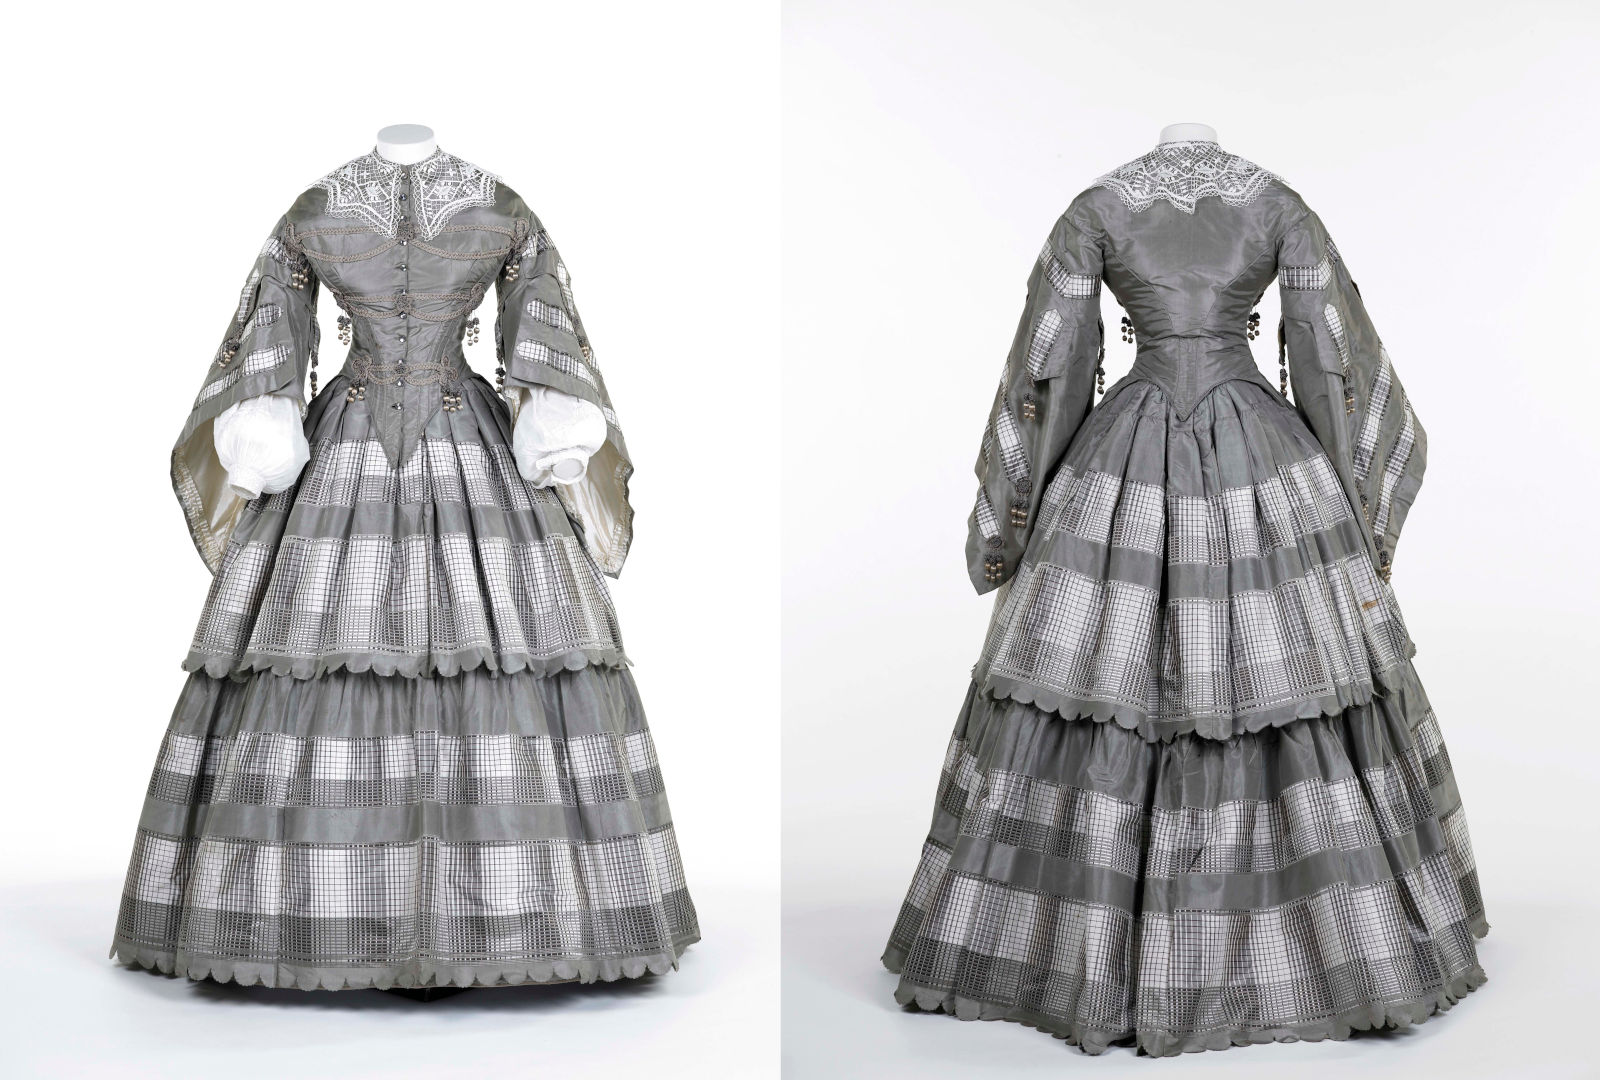 Victorian dress of silk taffeta